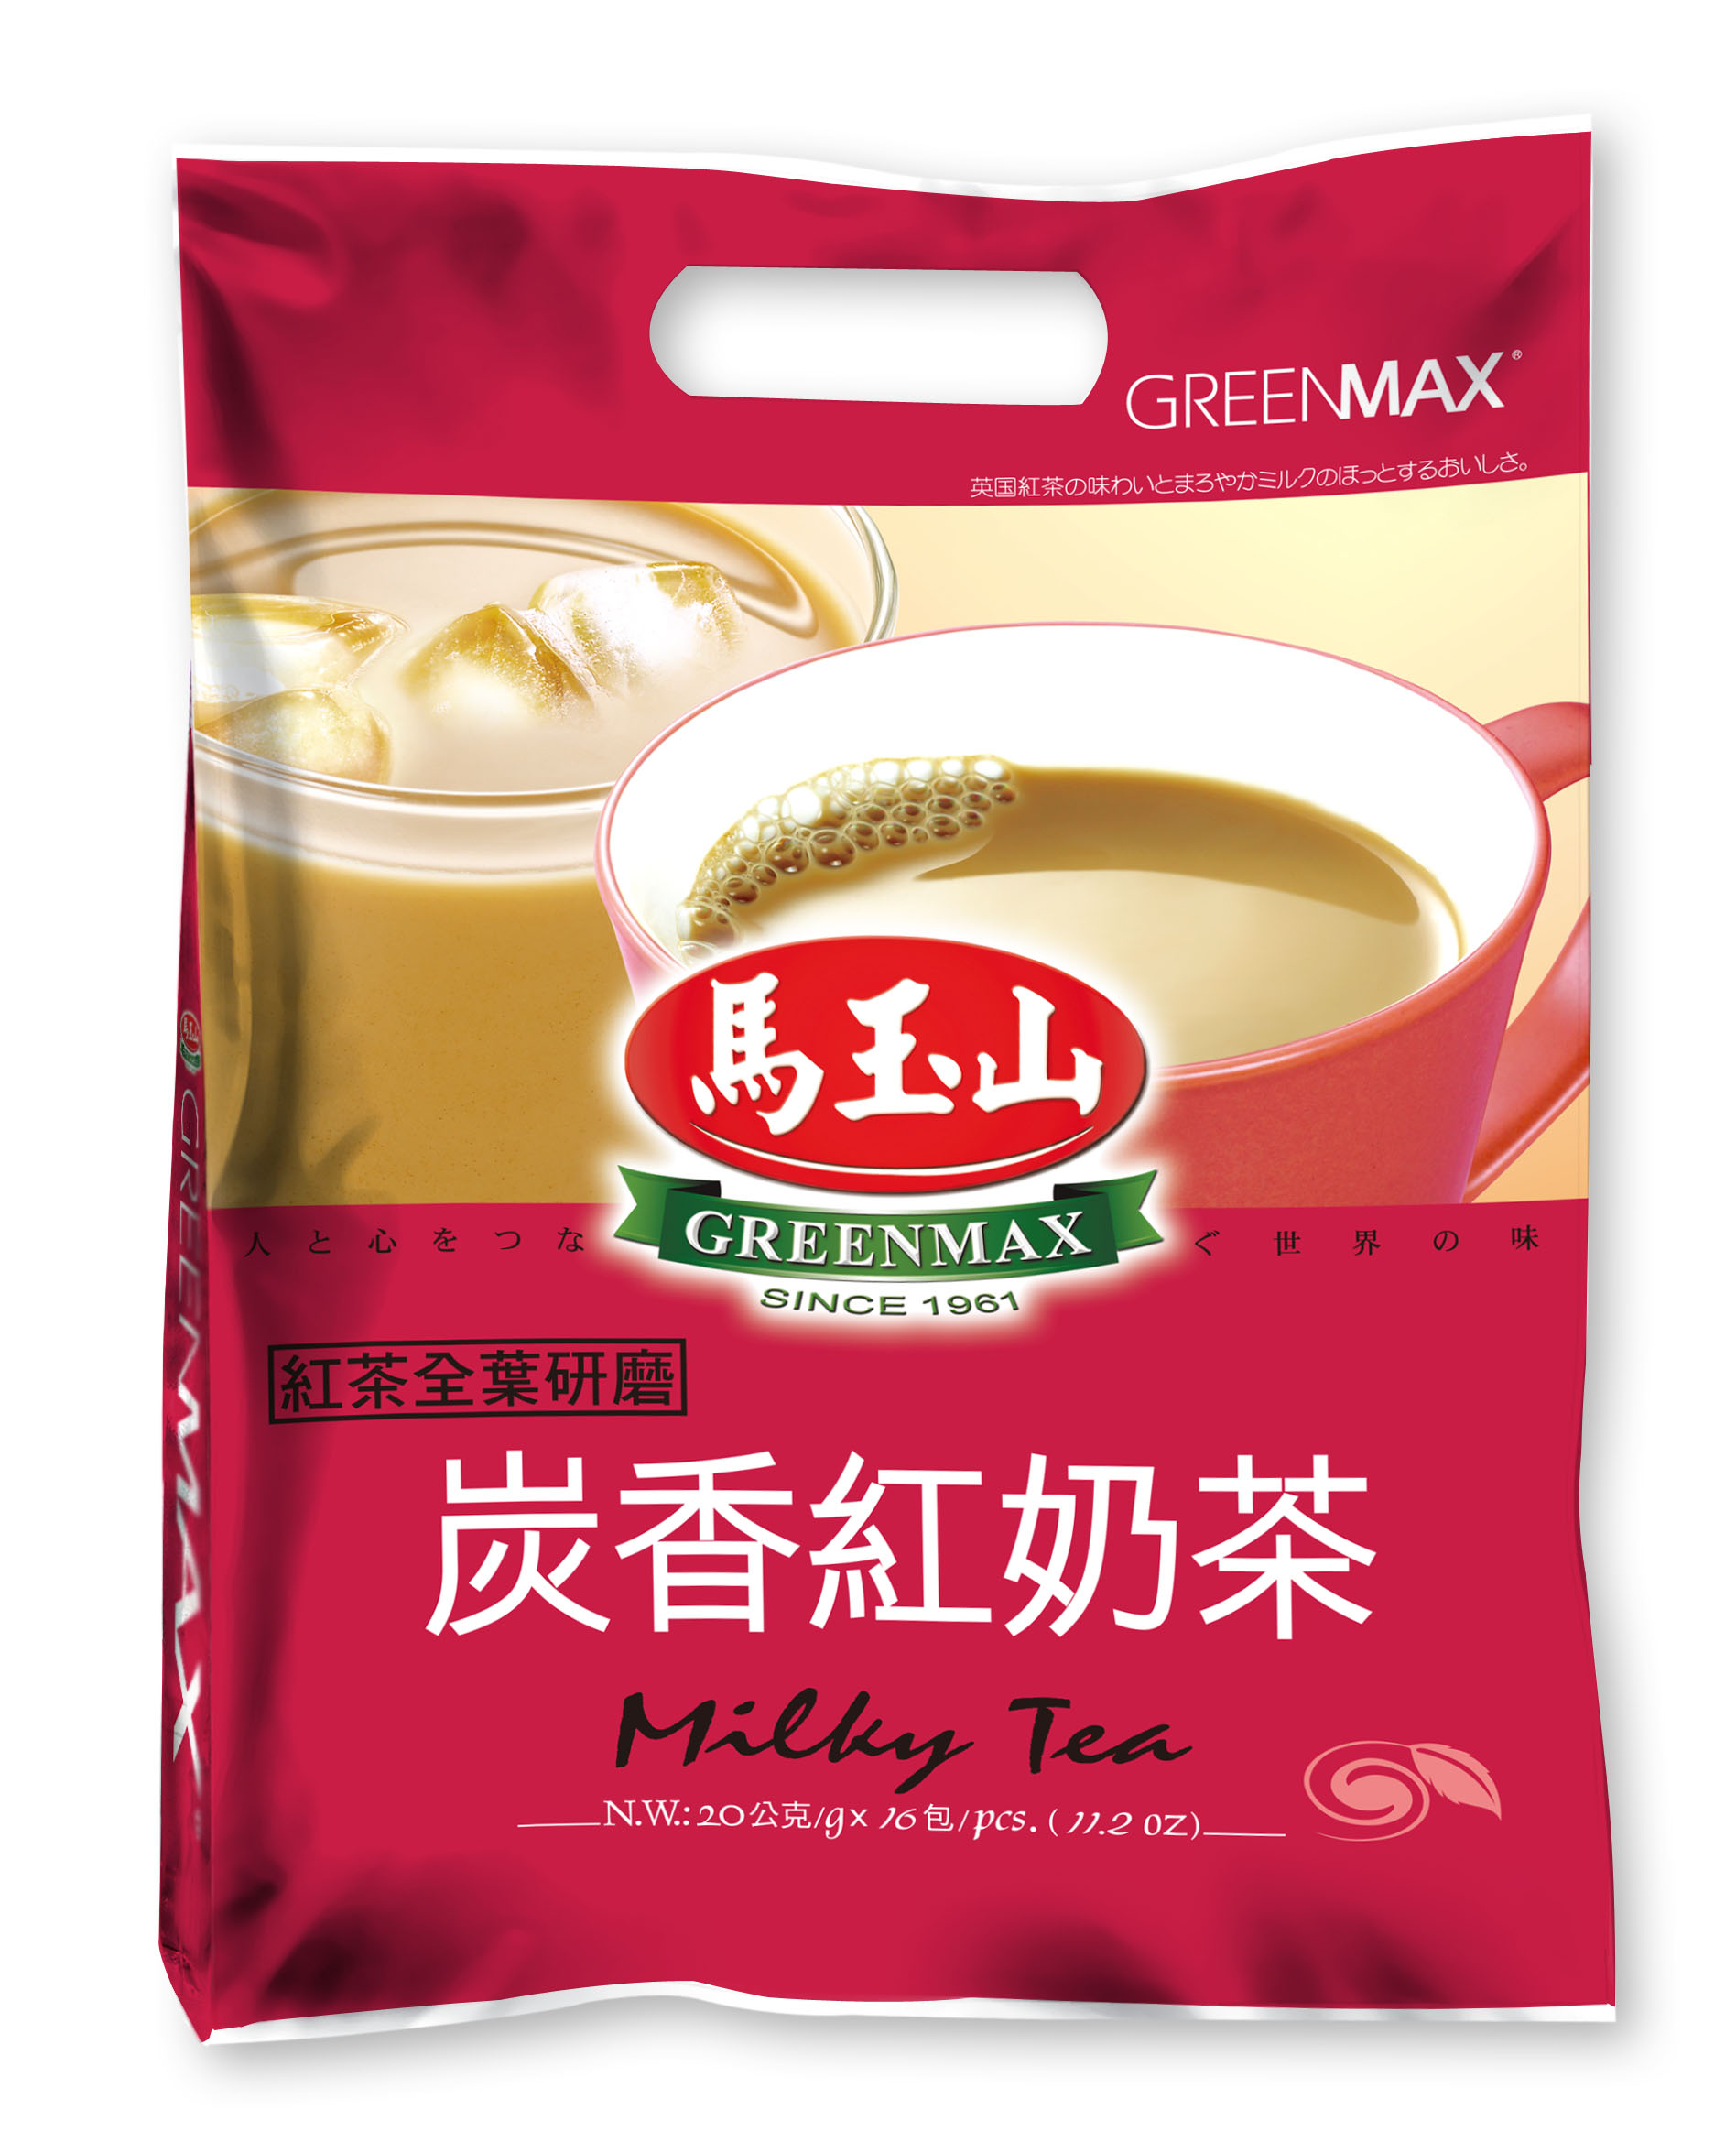 馬玉山-炭香紅奶茶 320g